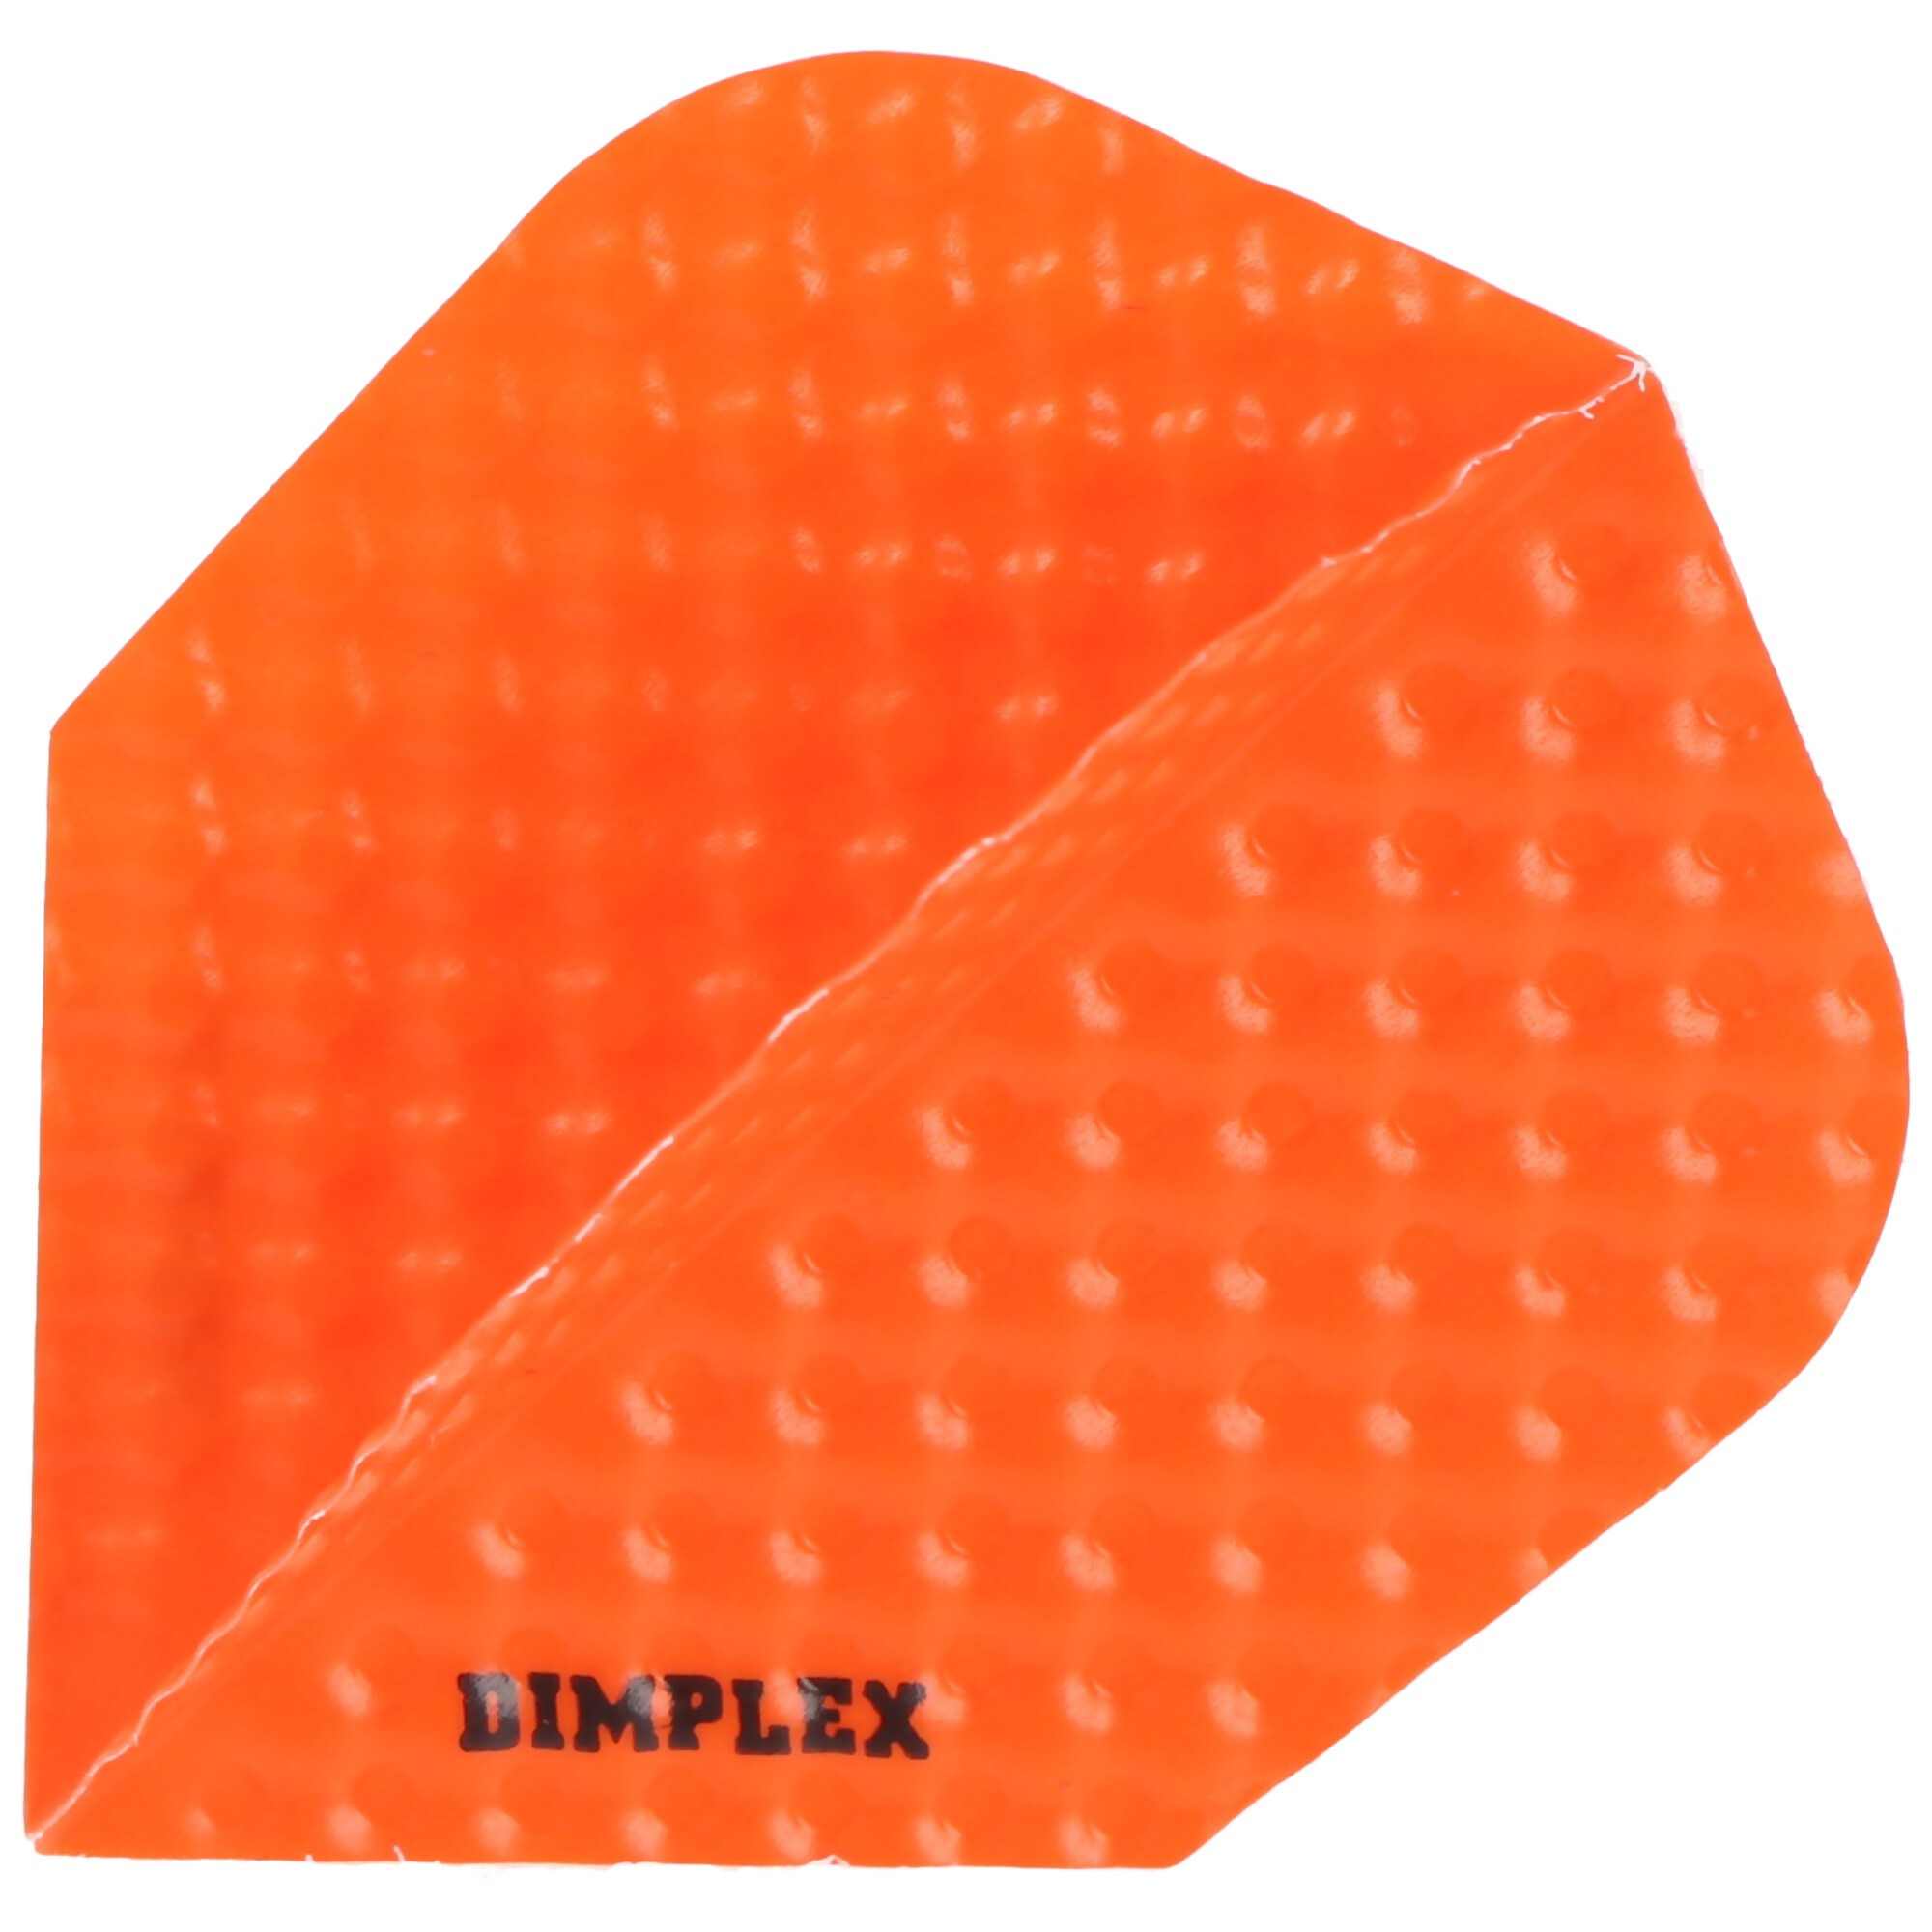 Dimplex Dart Flights Orange